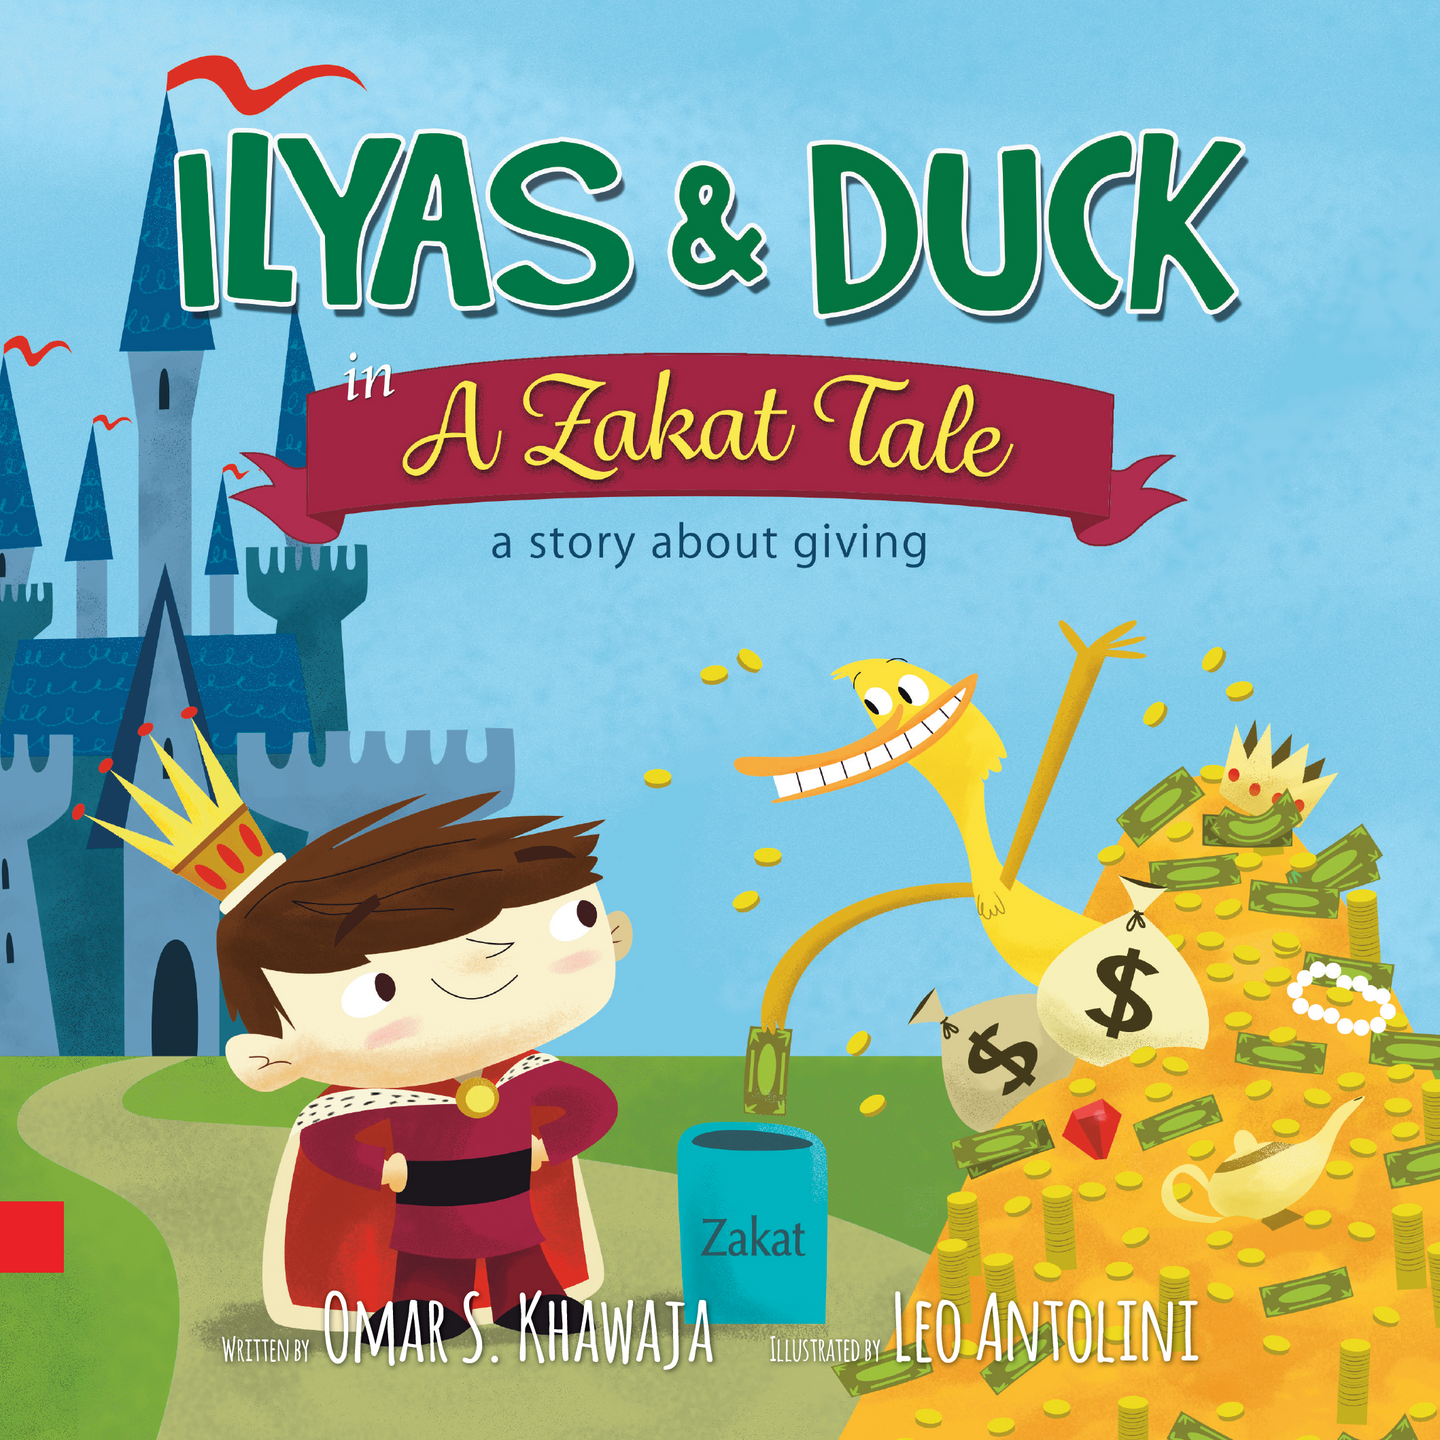 Ilyas & Duck - in A Zakat Tale